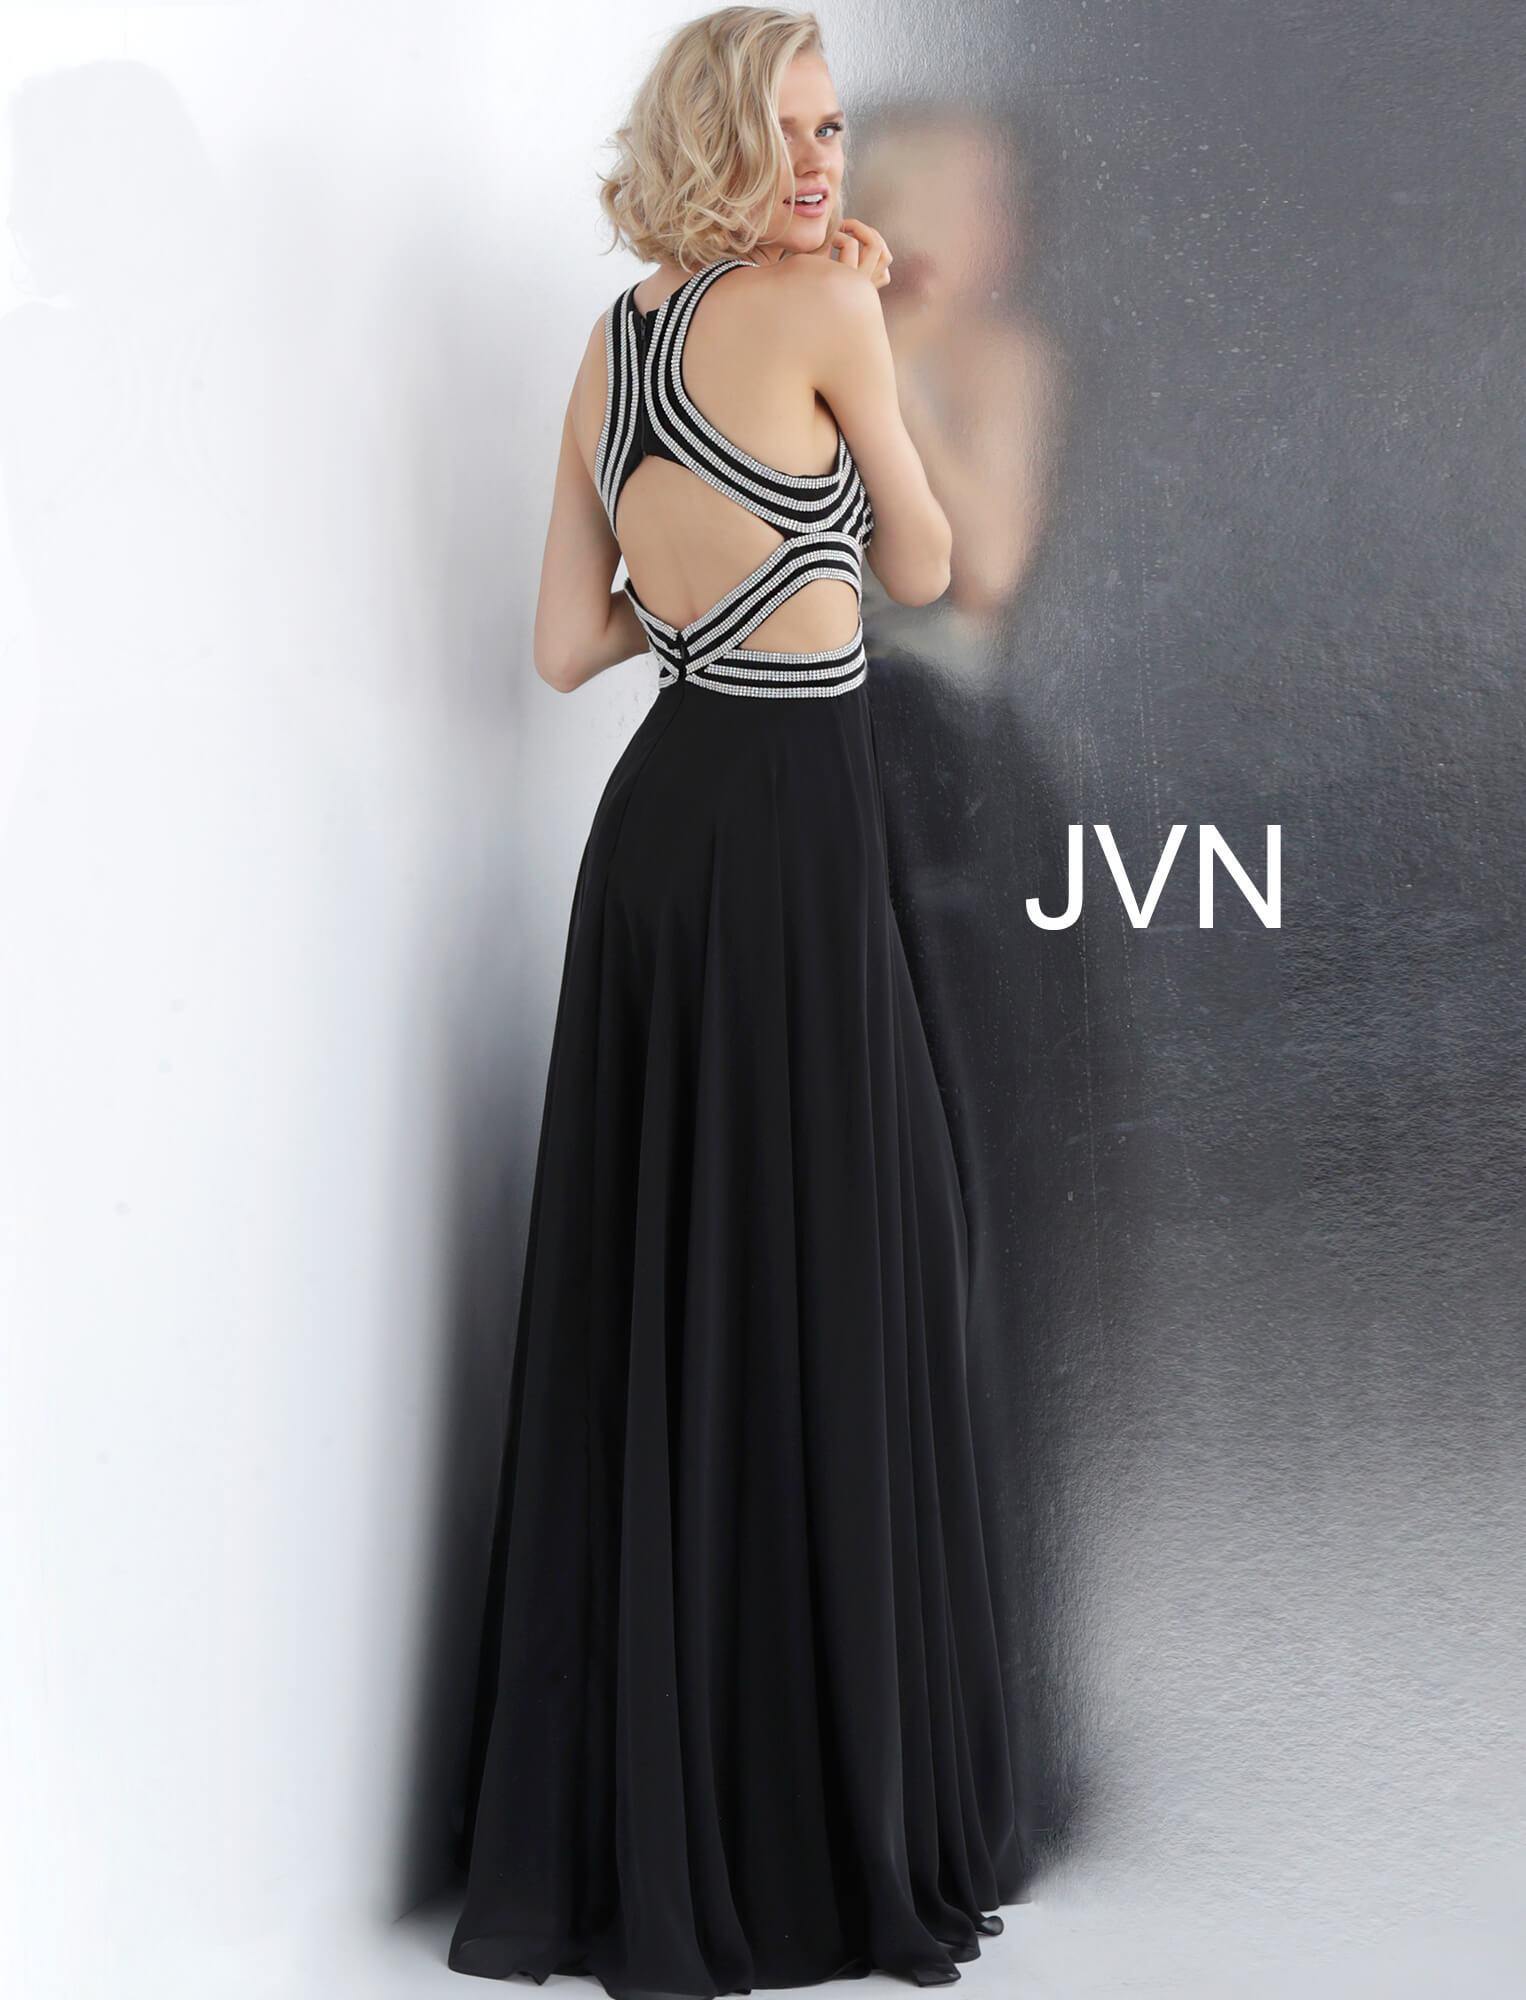 JVN By Jovani Long Prom Dress JVN62472 Black/Silver - The Dress Outlet Jovani